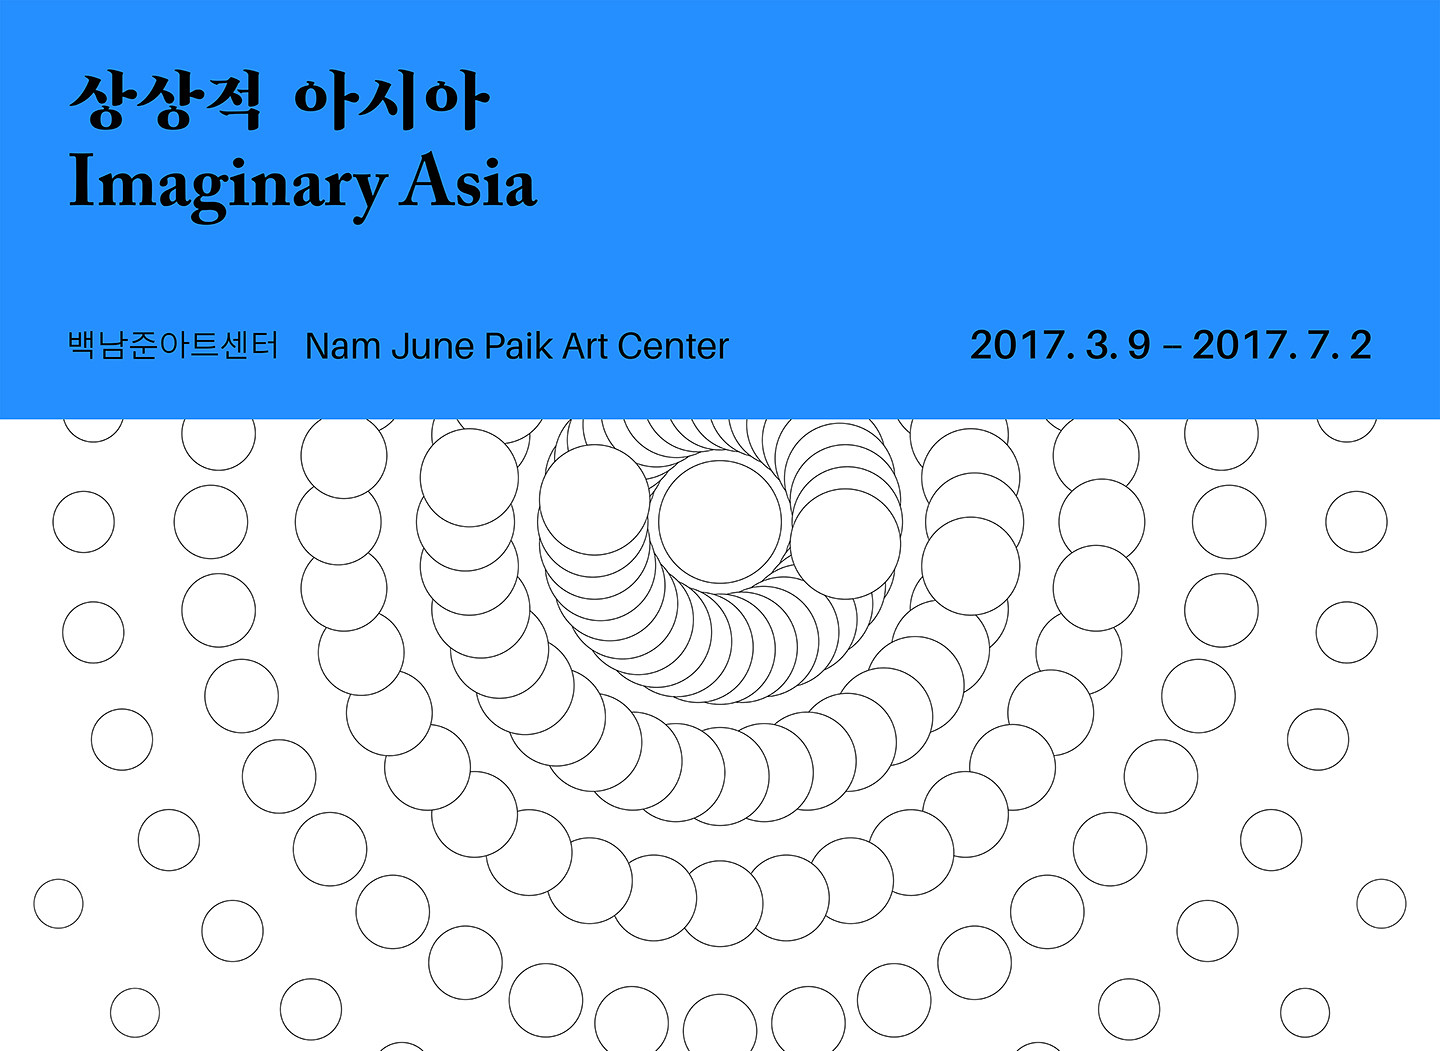 L’exposition « Imaginary Asia » du Nam June Paik Art Center invitent des artistes de diverses régions de l’Asie jusqu’au 2 juillet 2017